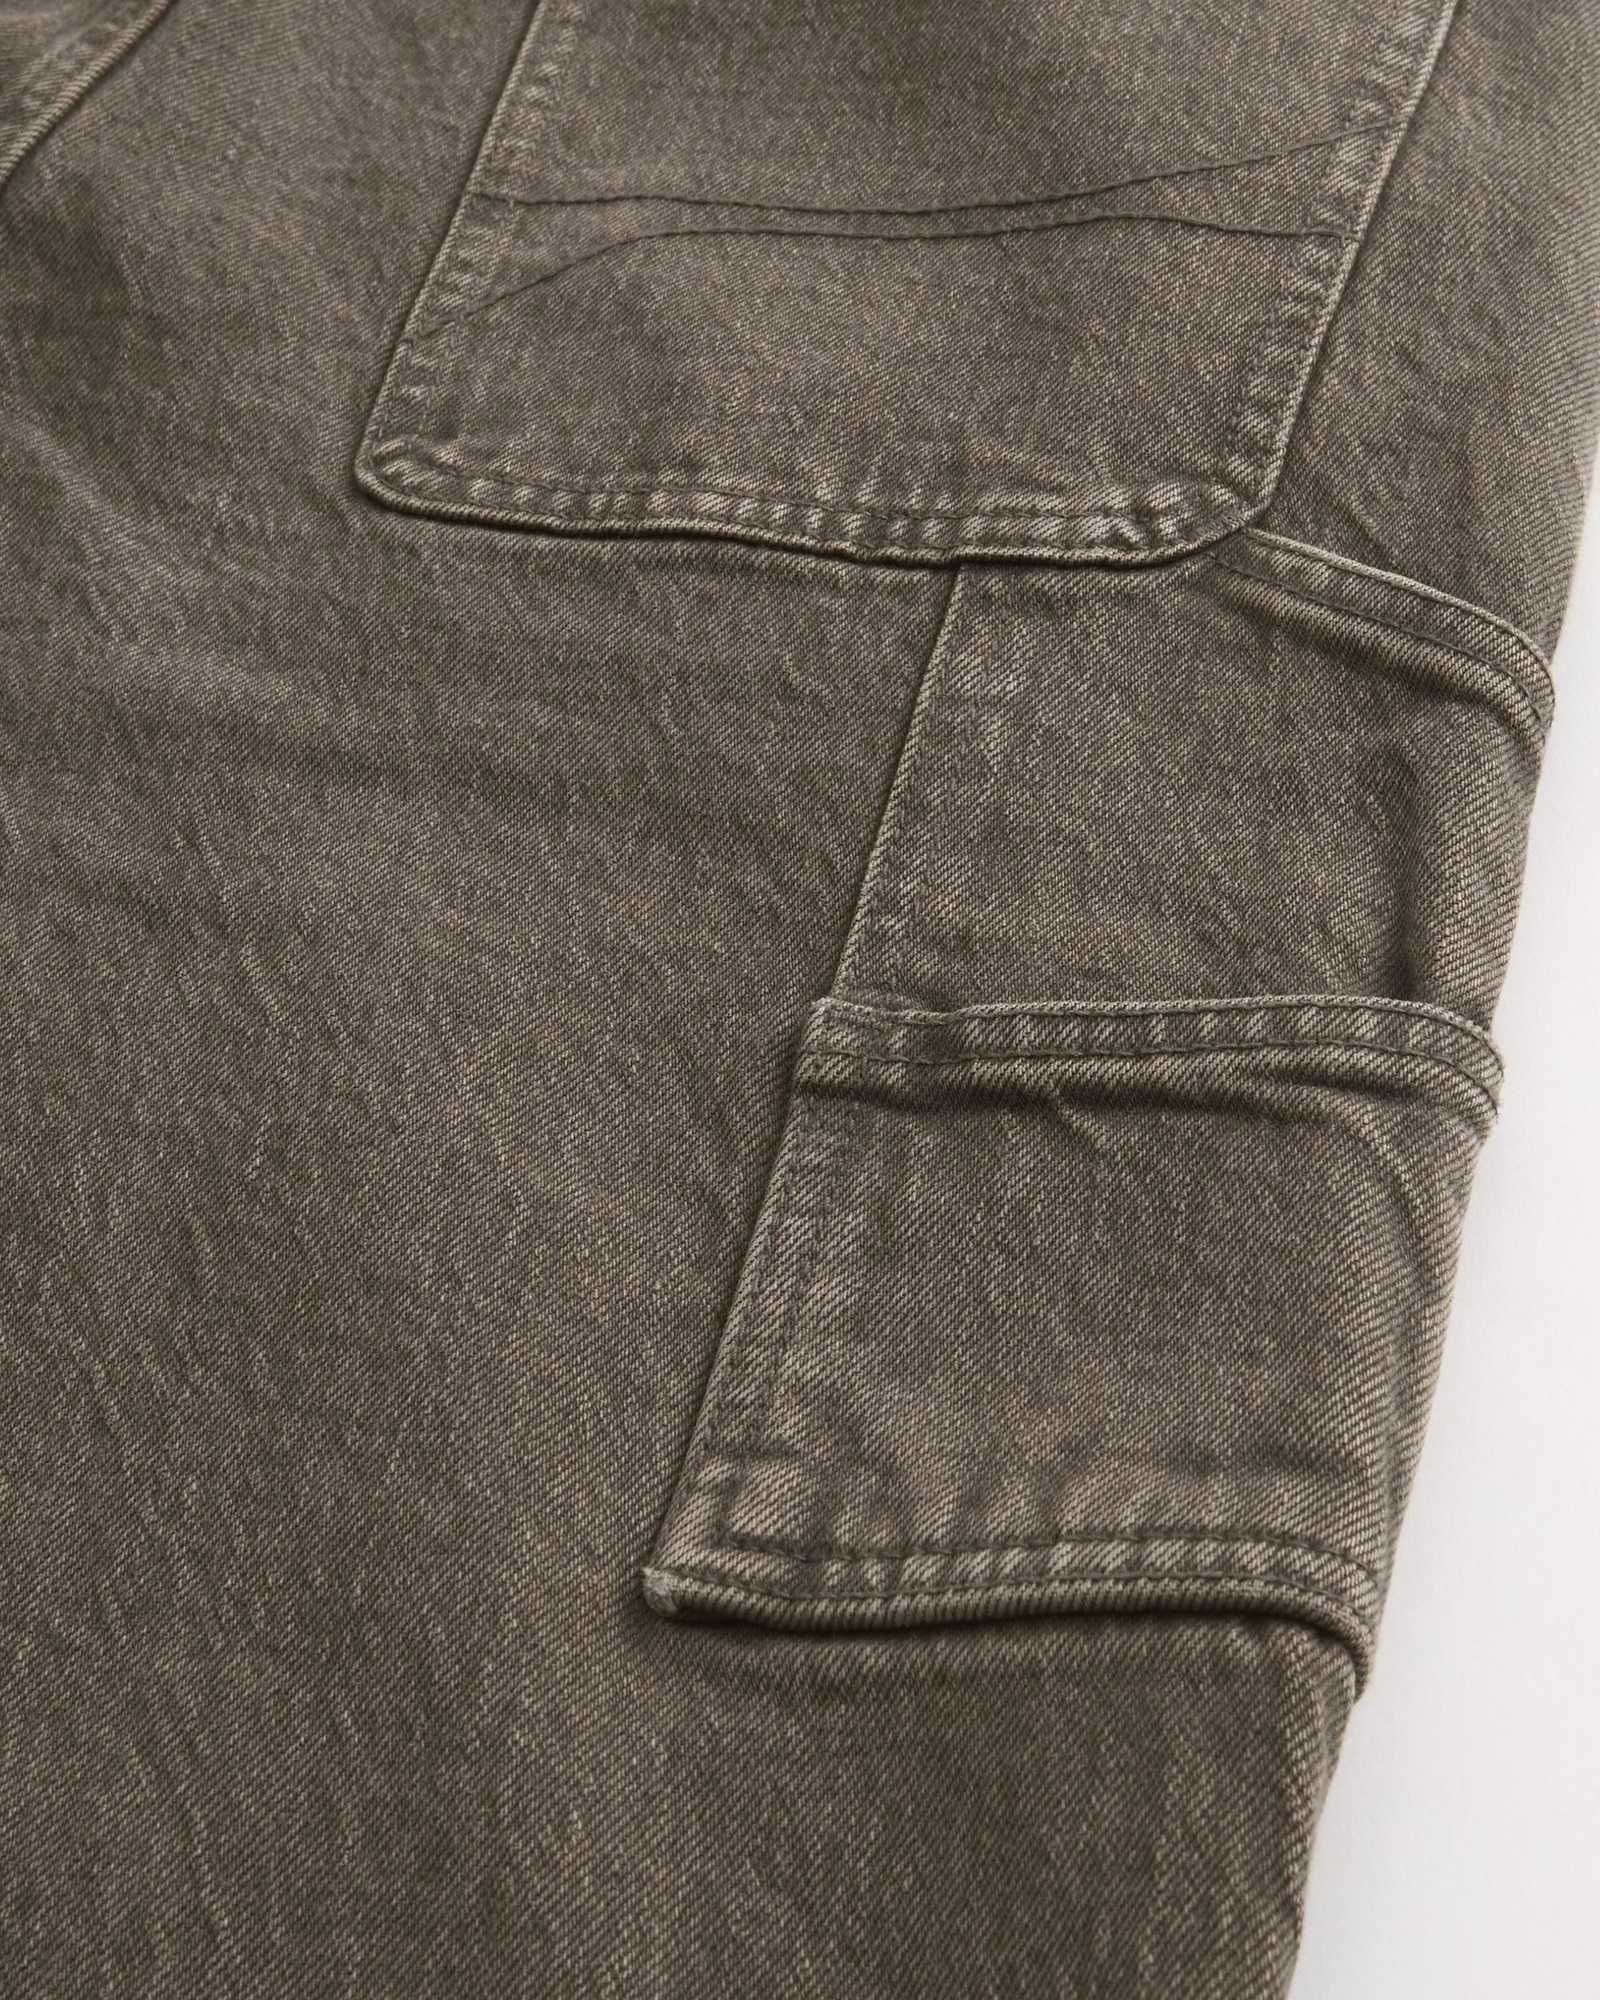 Классические джинсы Hollister в стиле CARPENTER  (Abercrombie & Fitch)